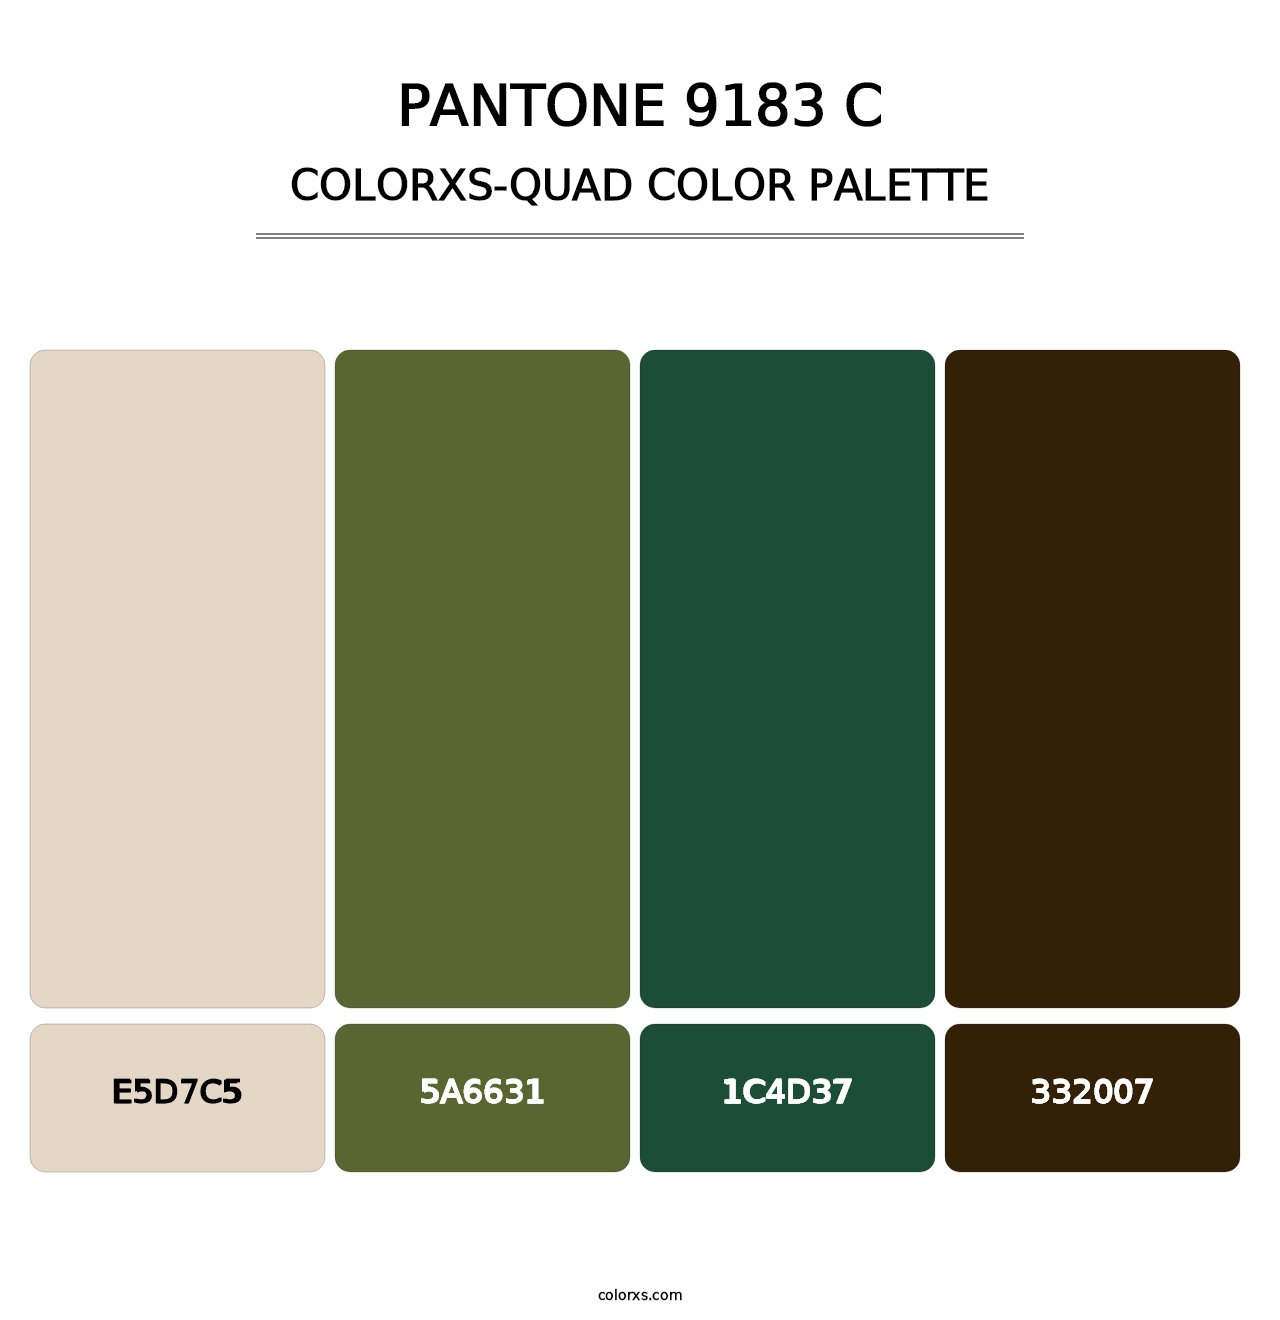 PANTONE 9183 C - Colorxs Quad Palette